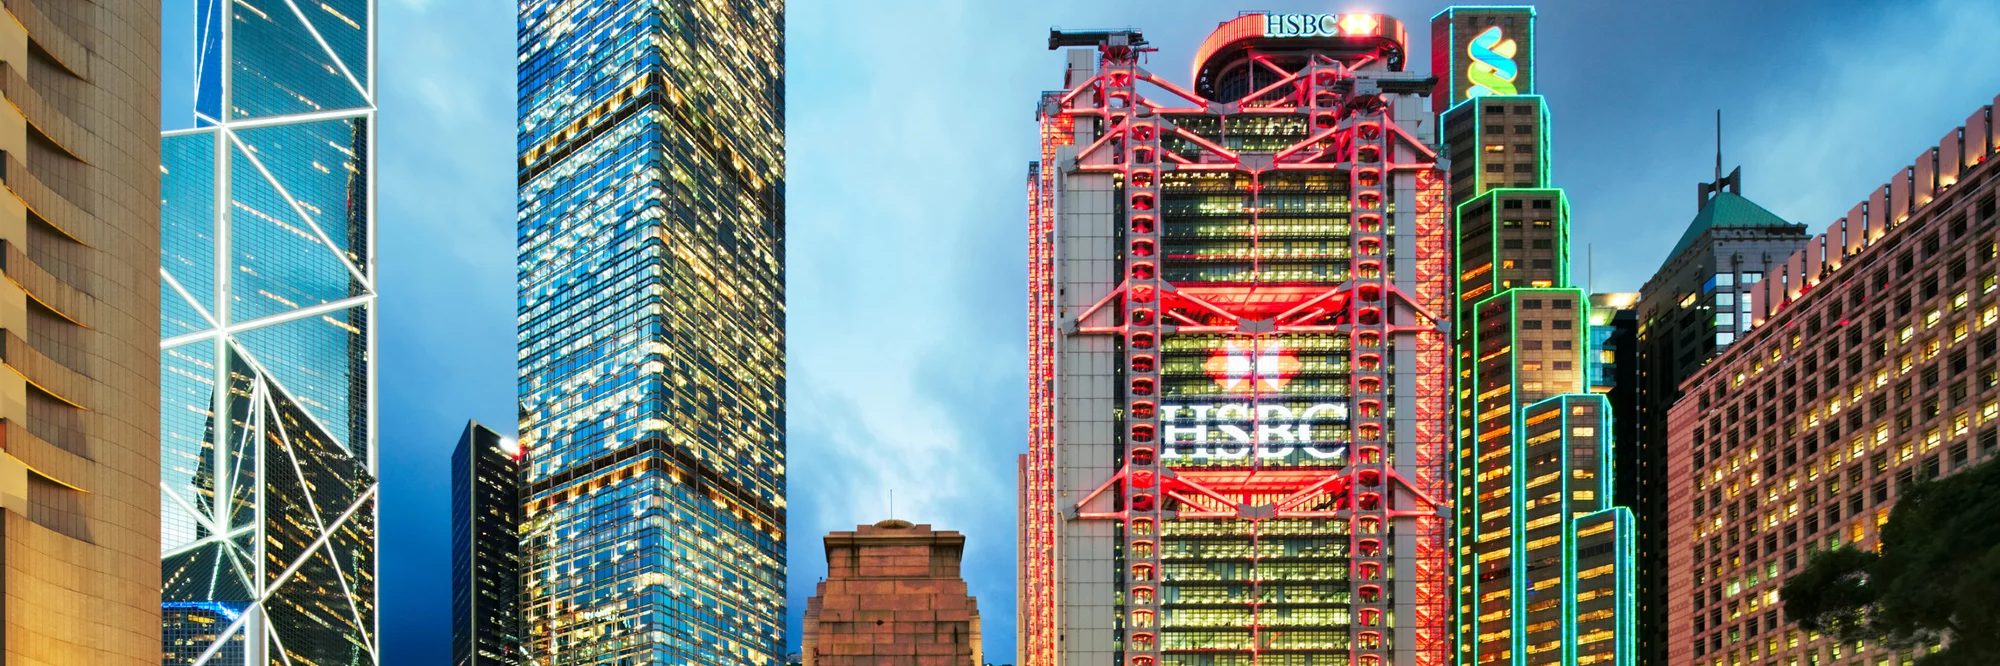 Tòa nhà chính của HSBC  tại Hồng Kông